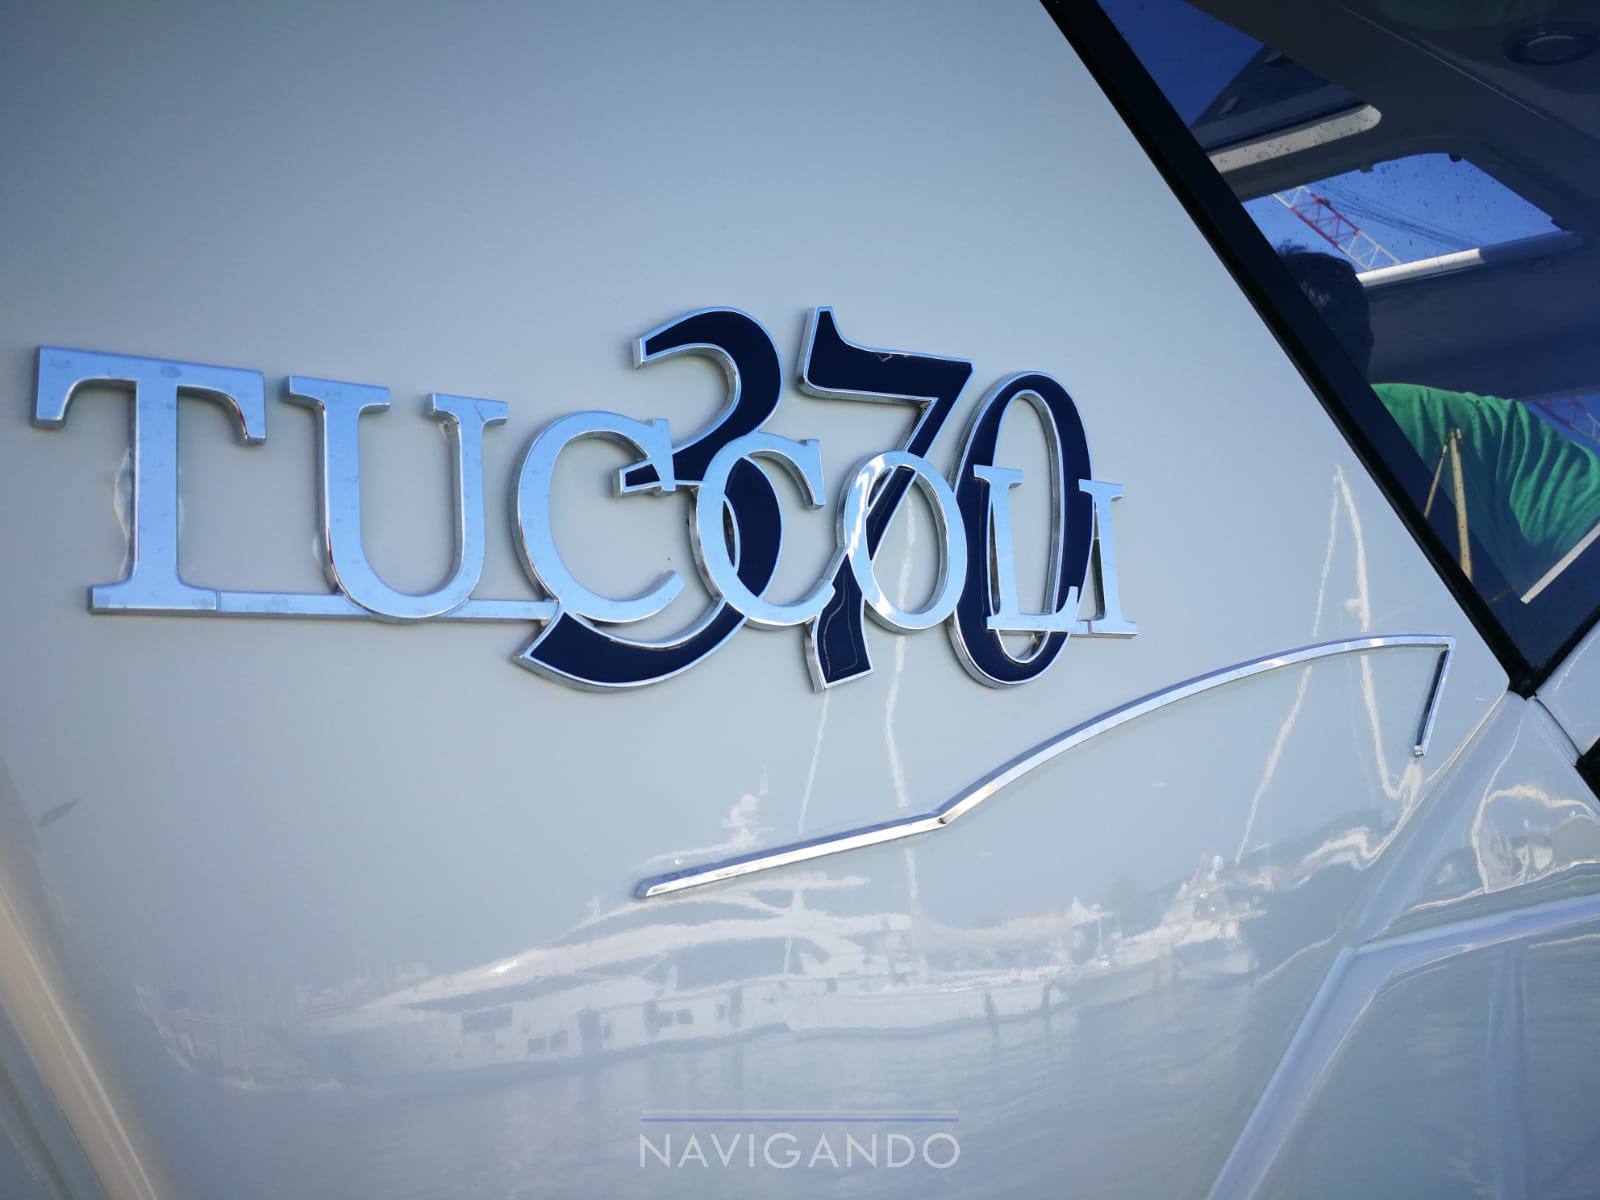 Tuccoli T 370 coupÃ¨